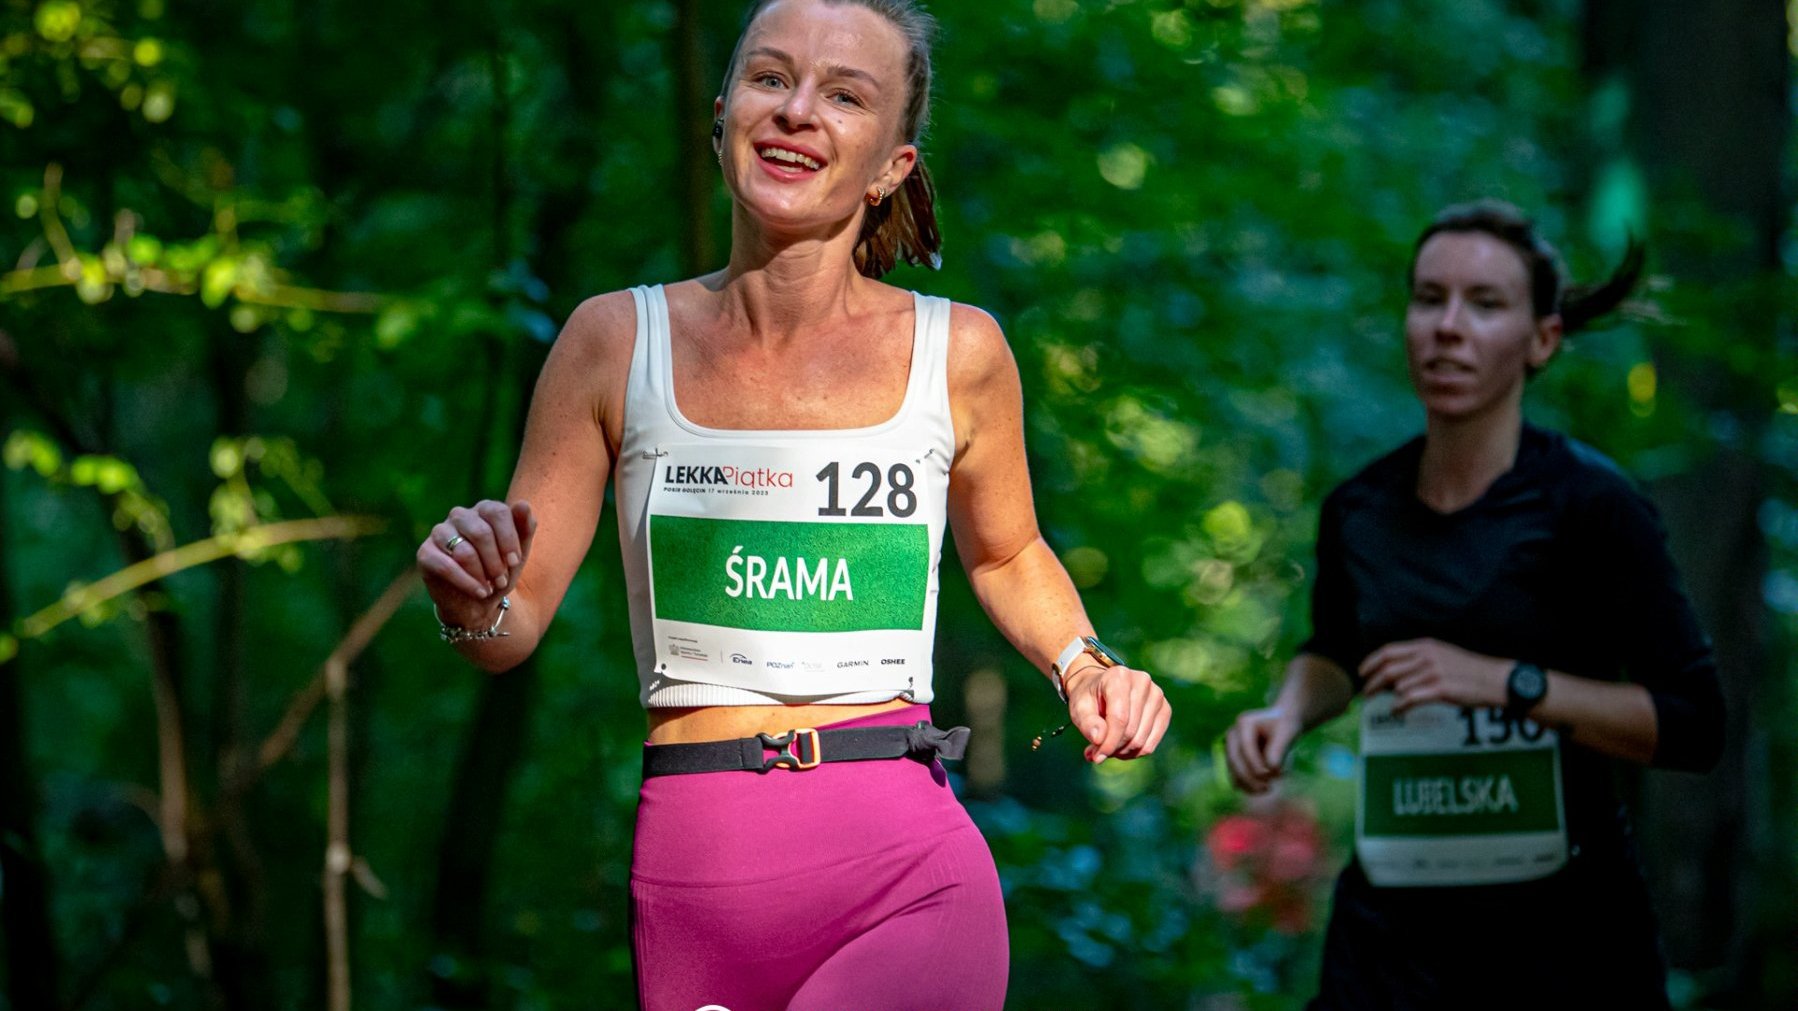 Dwie kobiety ubrane w stroje sportowe i z przyklejonymi numerami biegną w lesie.